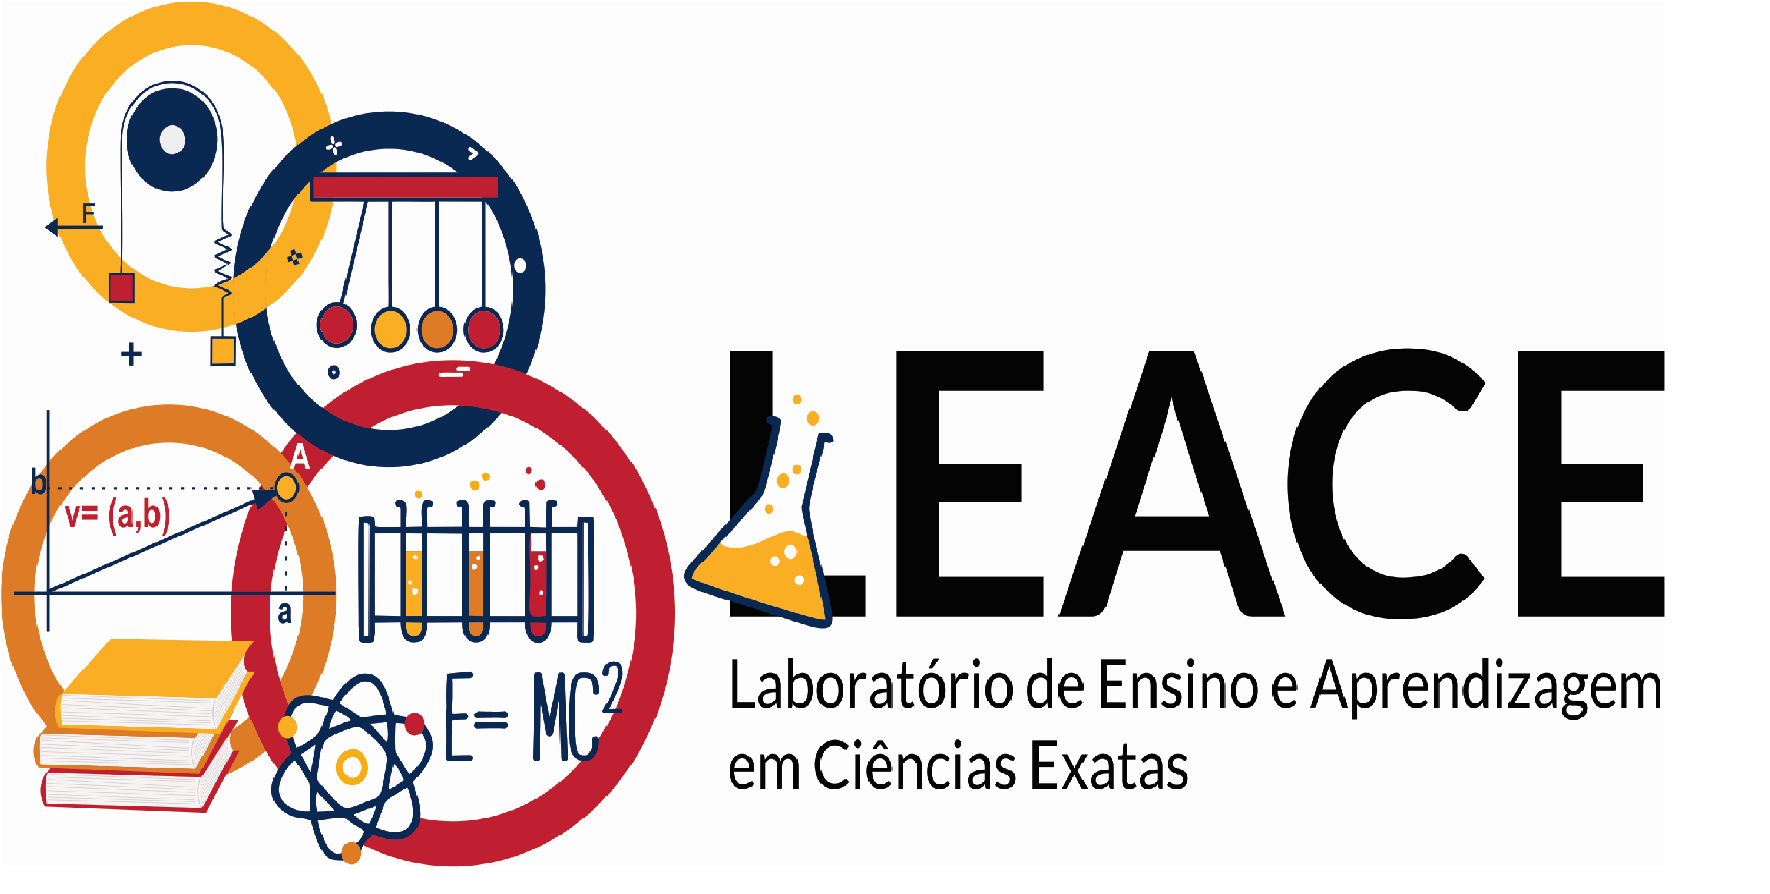 Laboratório de Ensino e Aprendizagem em Ciências Exatas - LEACE